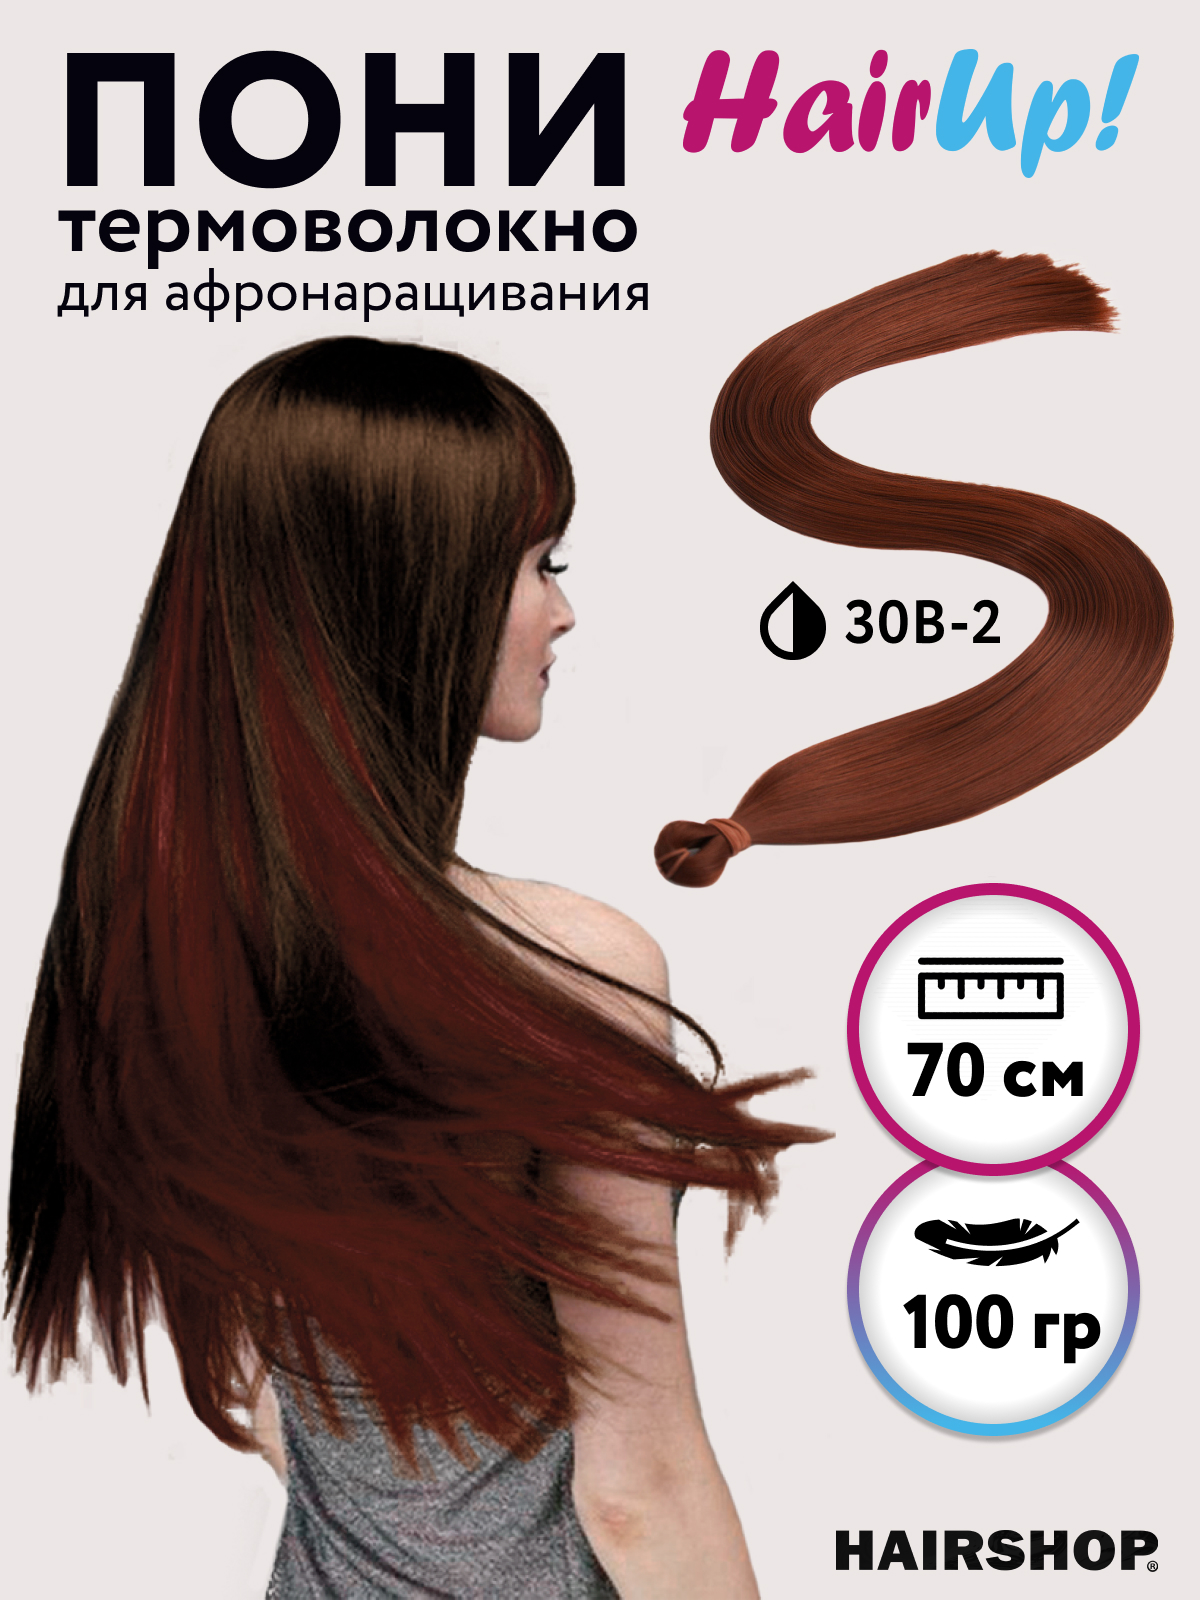 Канекалон Hairshop Пони HairUp для точечного афронаращивания прямые 30B-2 1,4м 100г